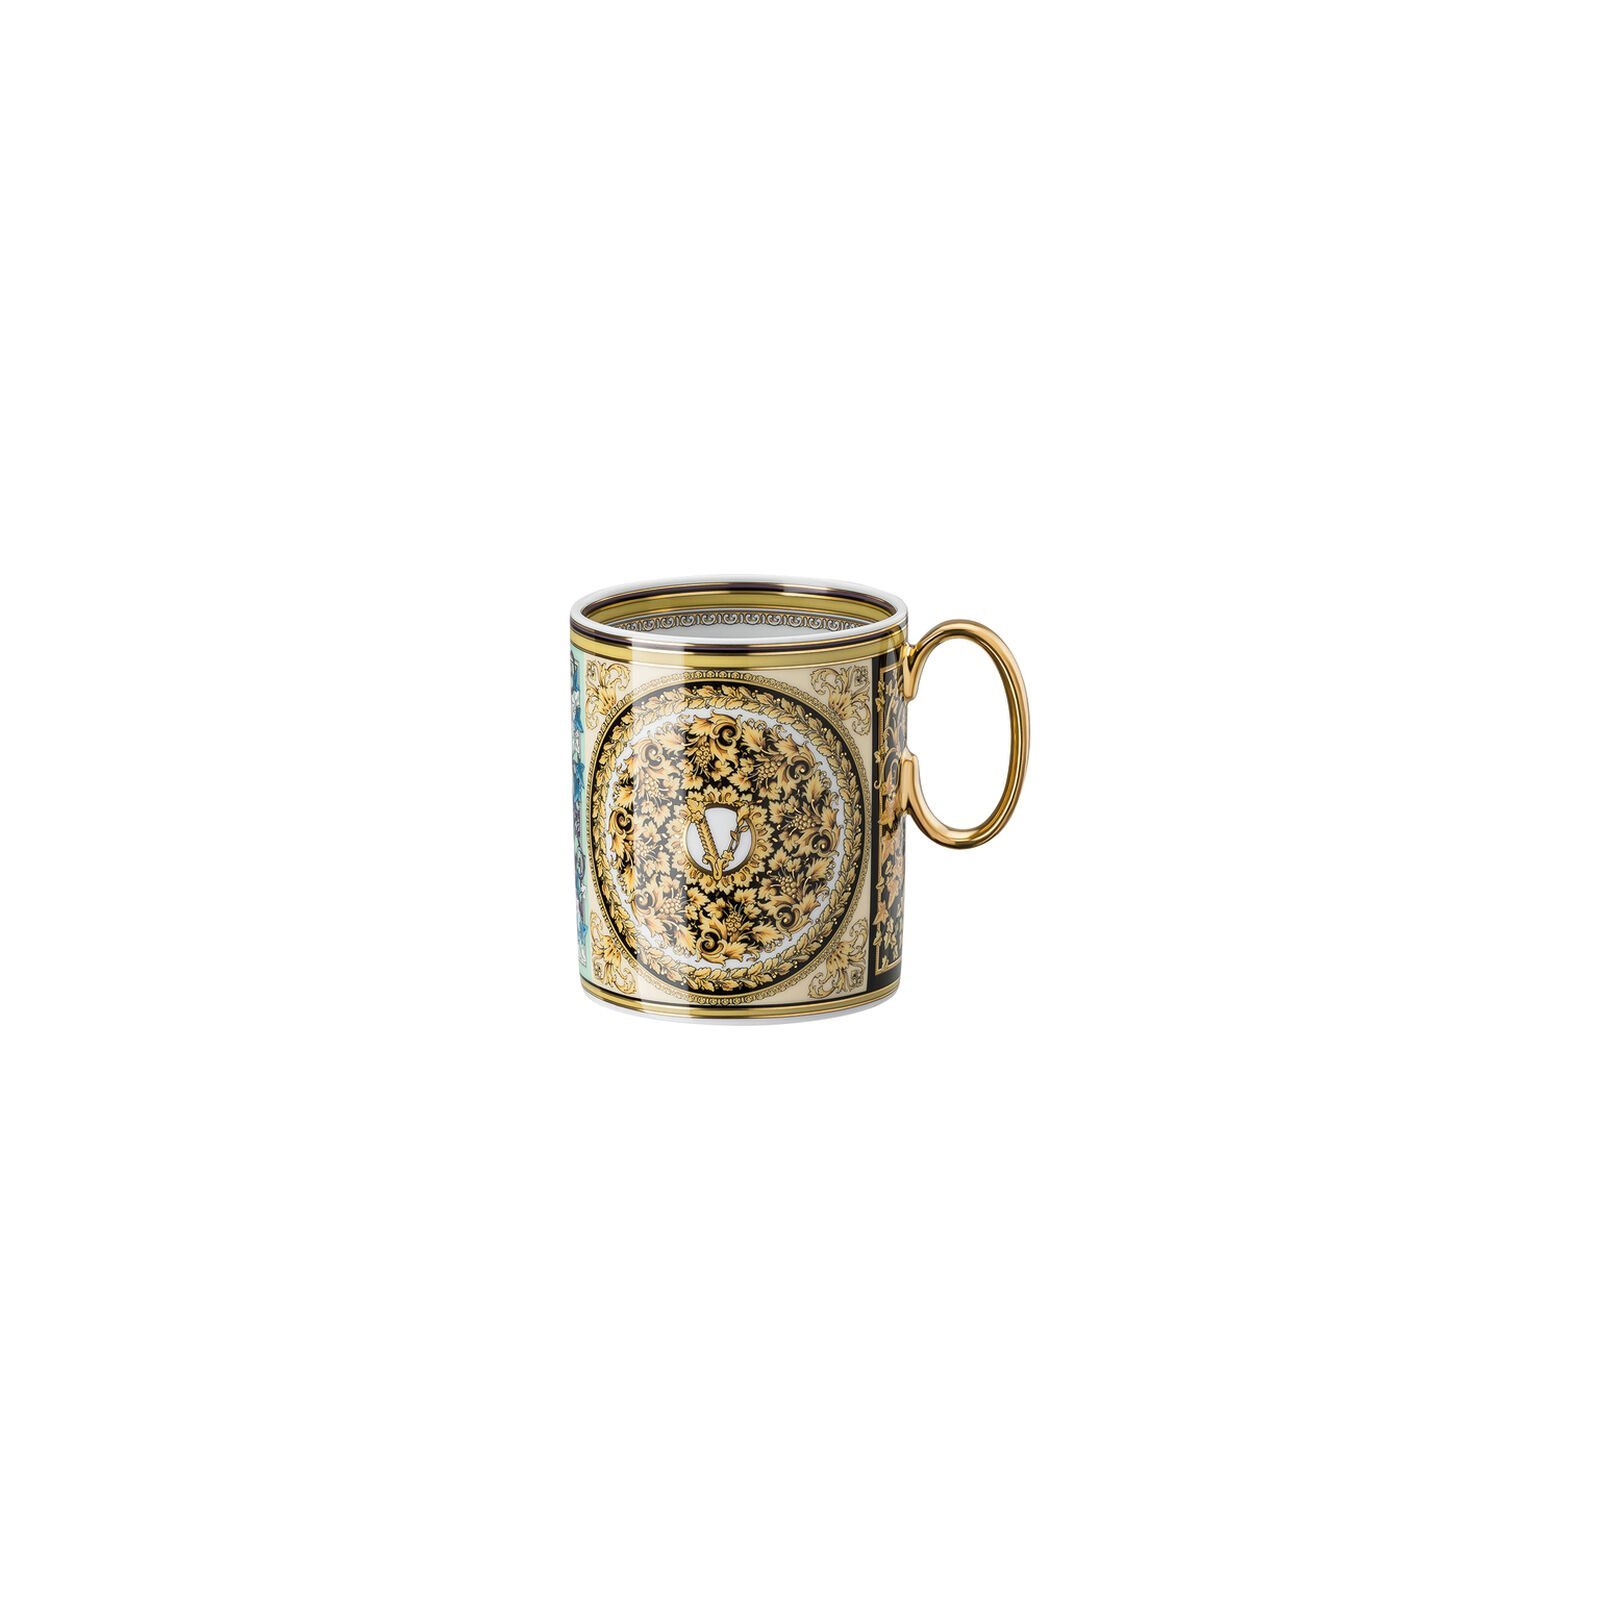 Versace Rosenthal Barocco Mosaic mug with handle